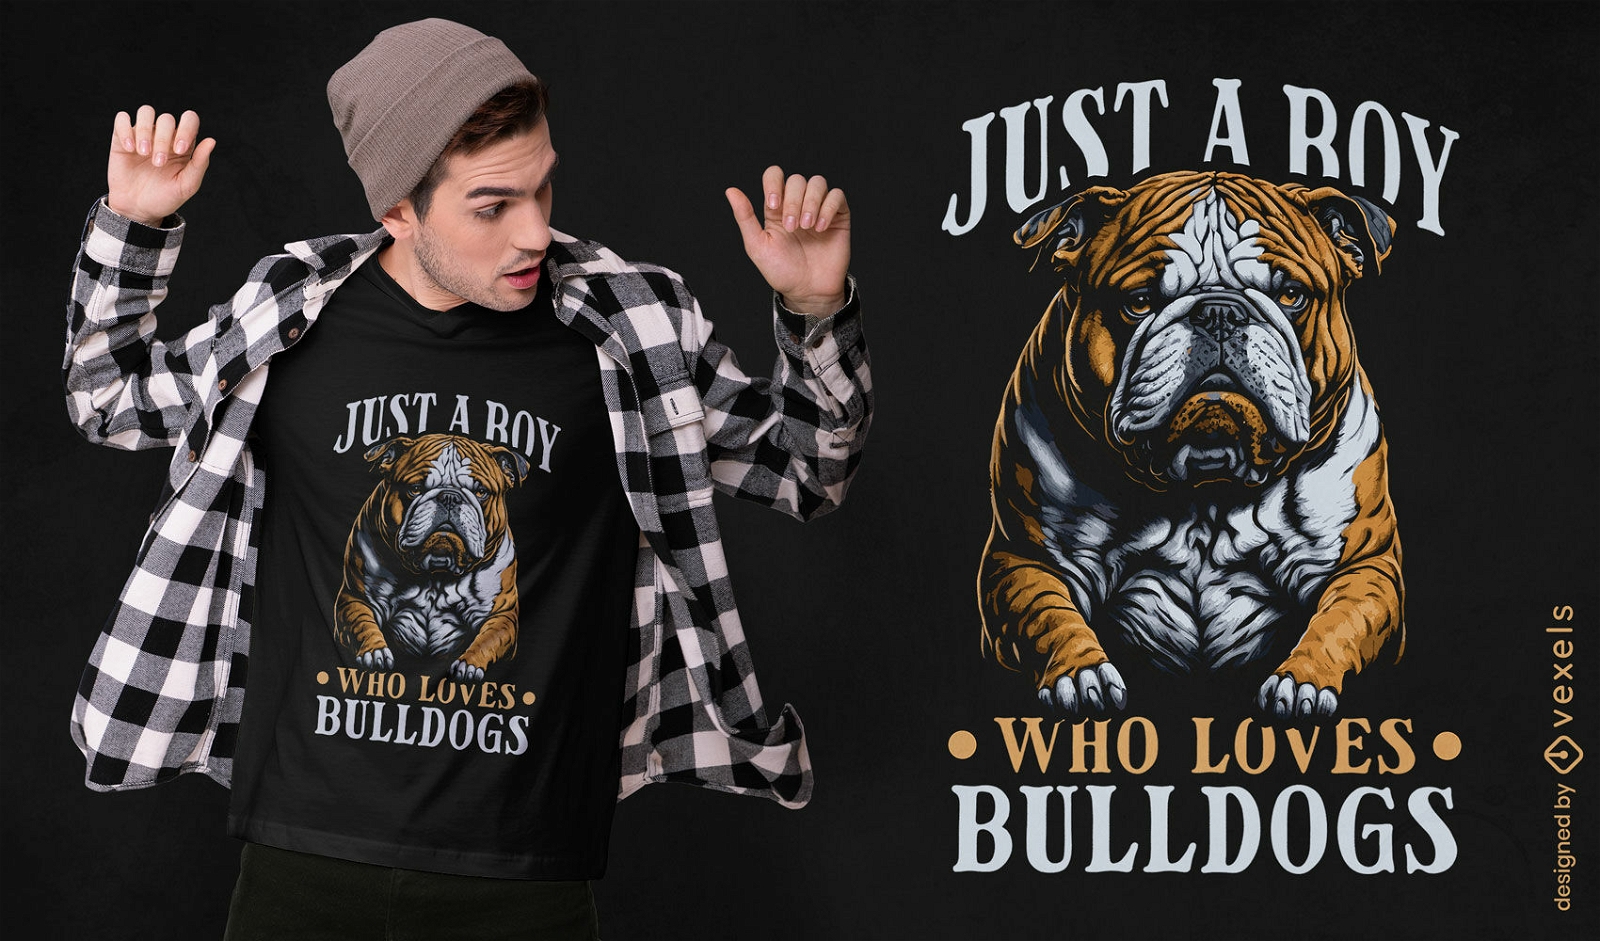 Dise?o de camiseta de chico que ama los bulldogs.